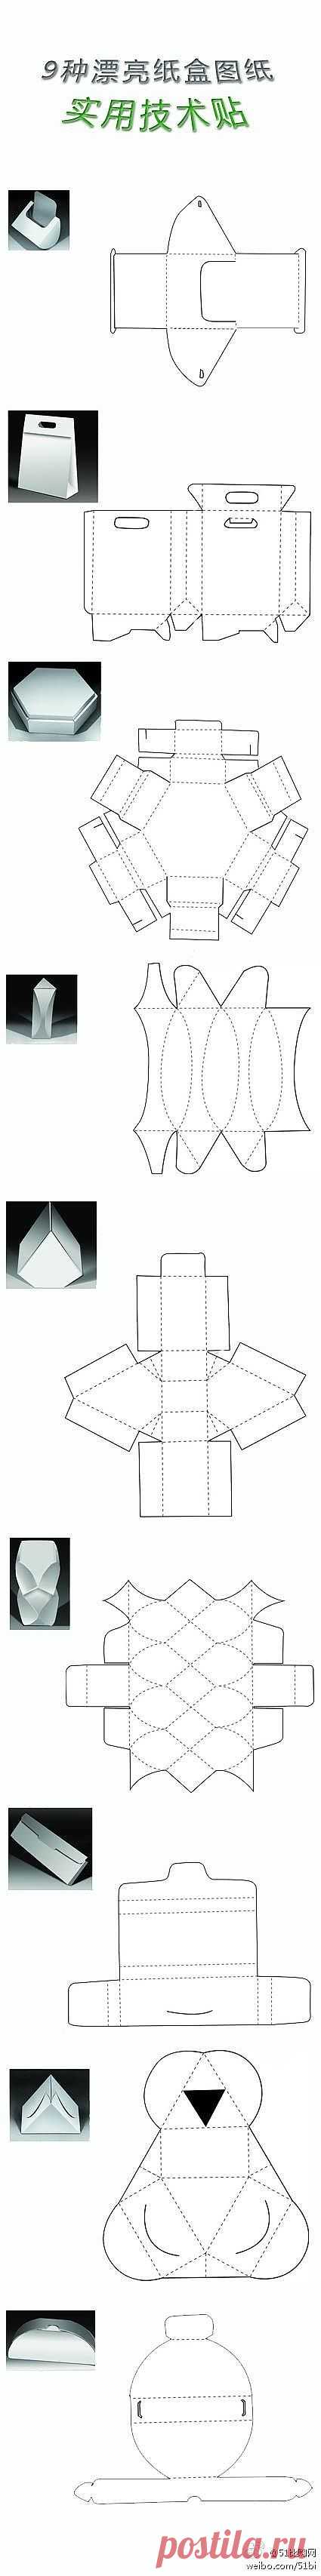 9中盒子的折法…_来自小小艾的图片分享-堆糖网